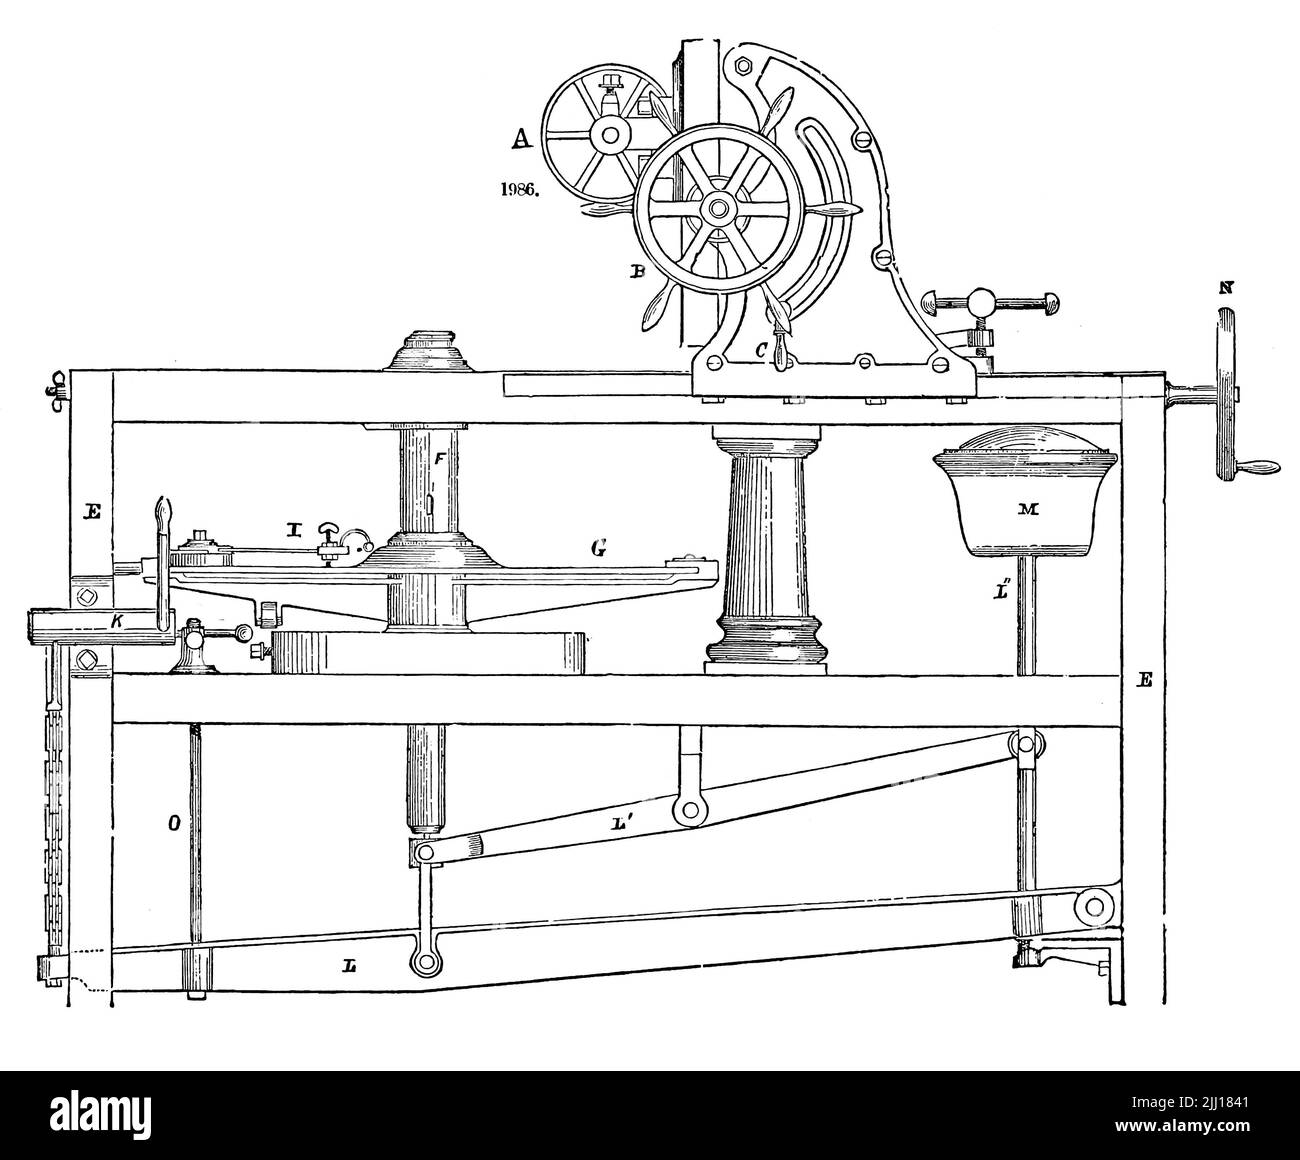 Fanggeräte Und Zähne Uhrwerkuhrmechanismus. Handwerk Und Präzision Stock  Abbildung - Illustration von zahn, rund: 187801029